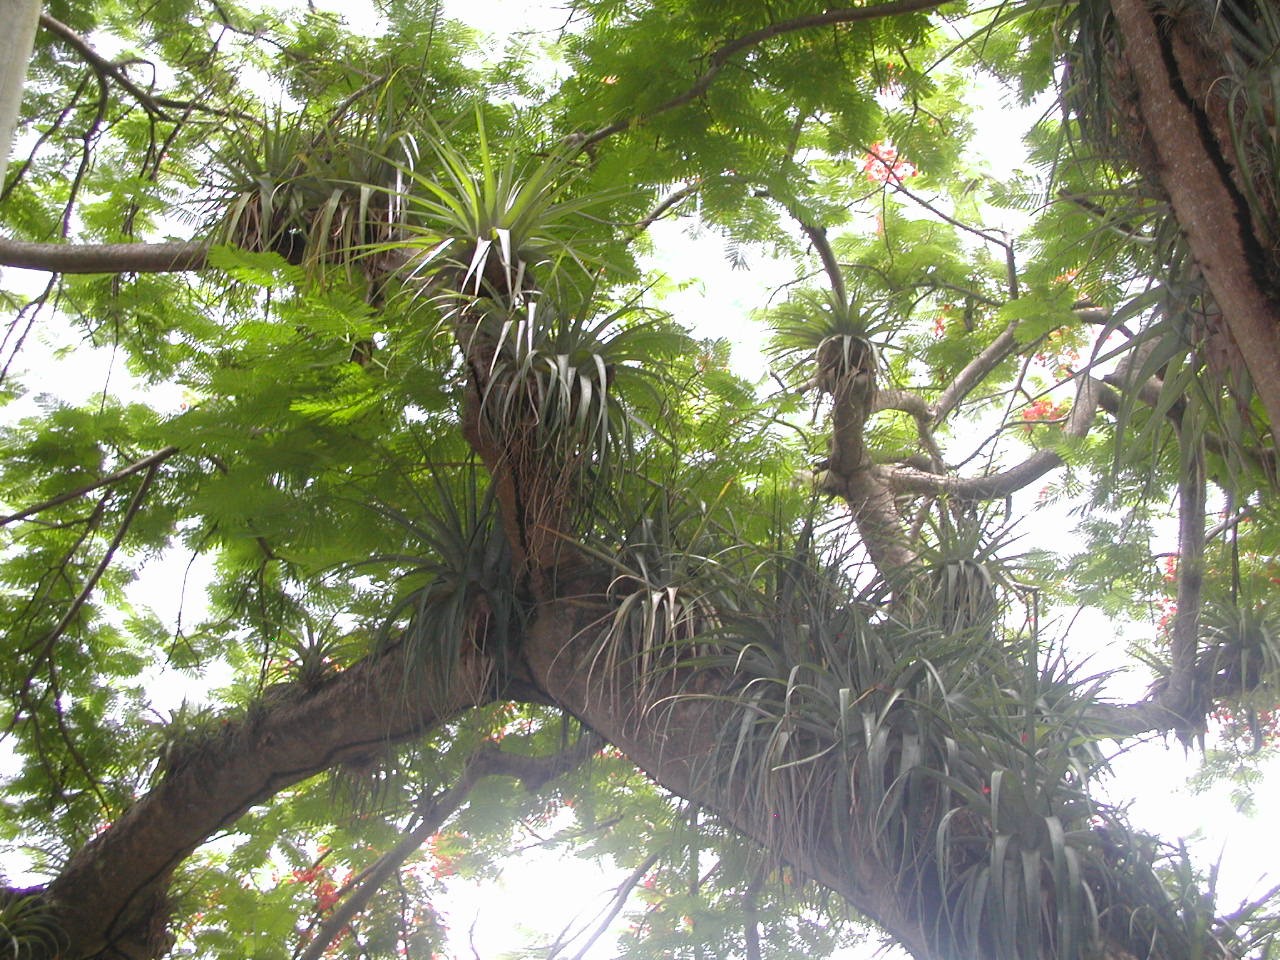 Forêt humide de Guadeloupe : Notez la quantité de Broméliacées se trouvant sur la même branche de flamboyant ! L’arbre est en pleine santé, on observe même sa floraison rouge à travers la canopée.